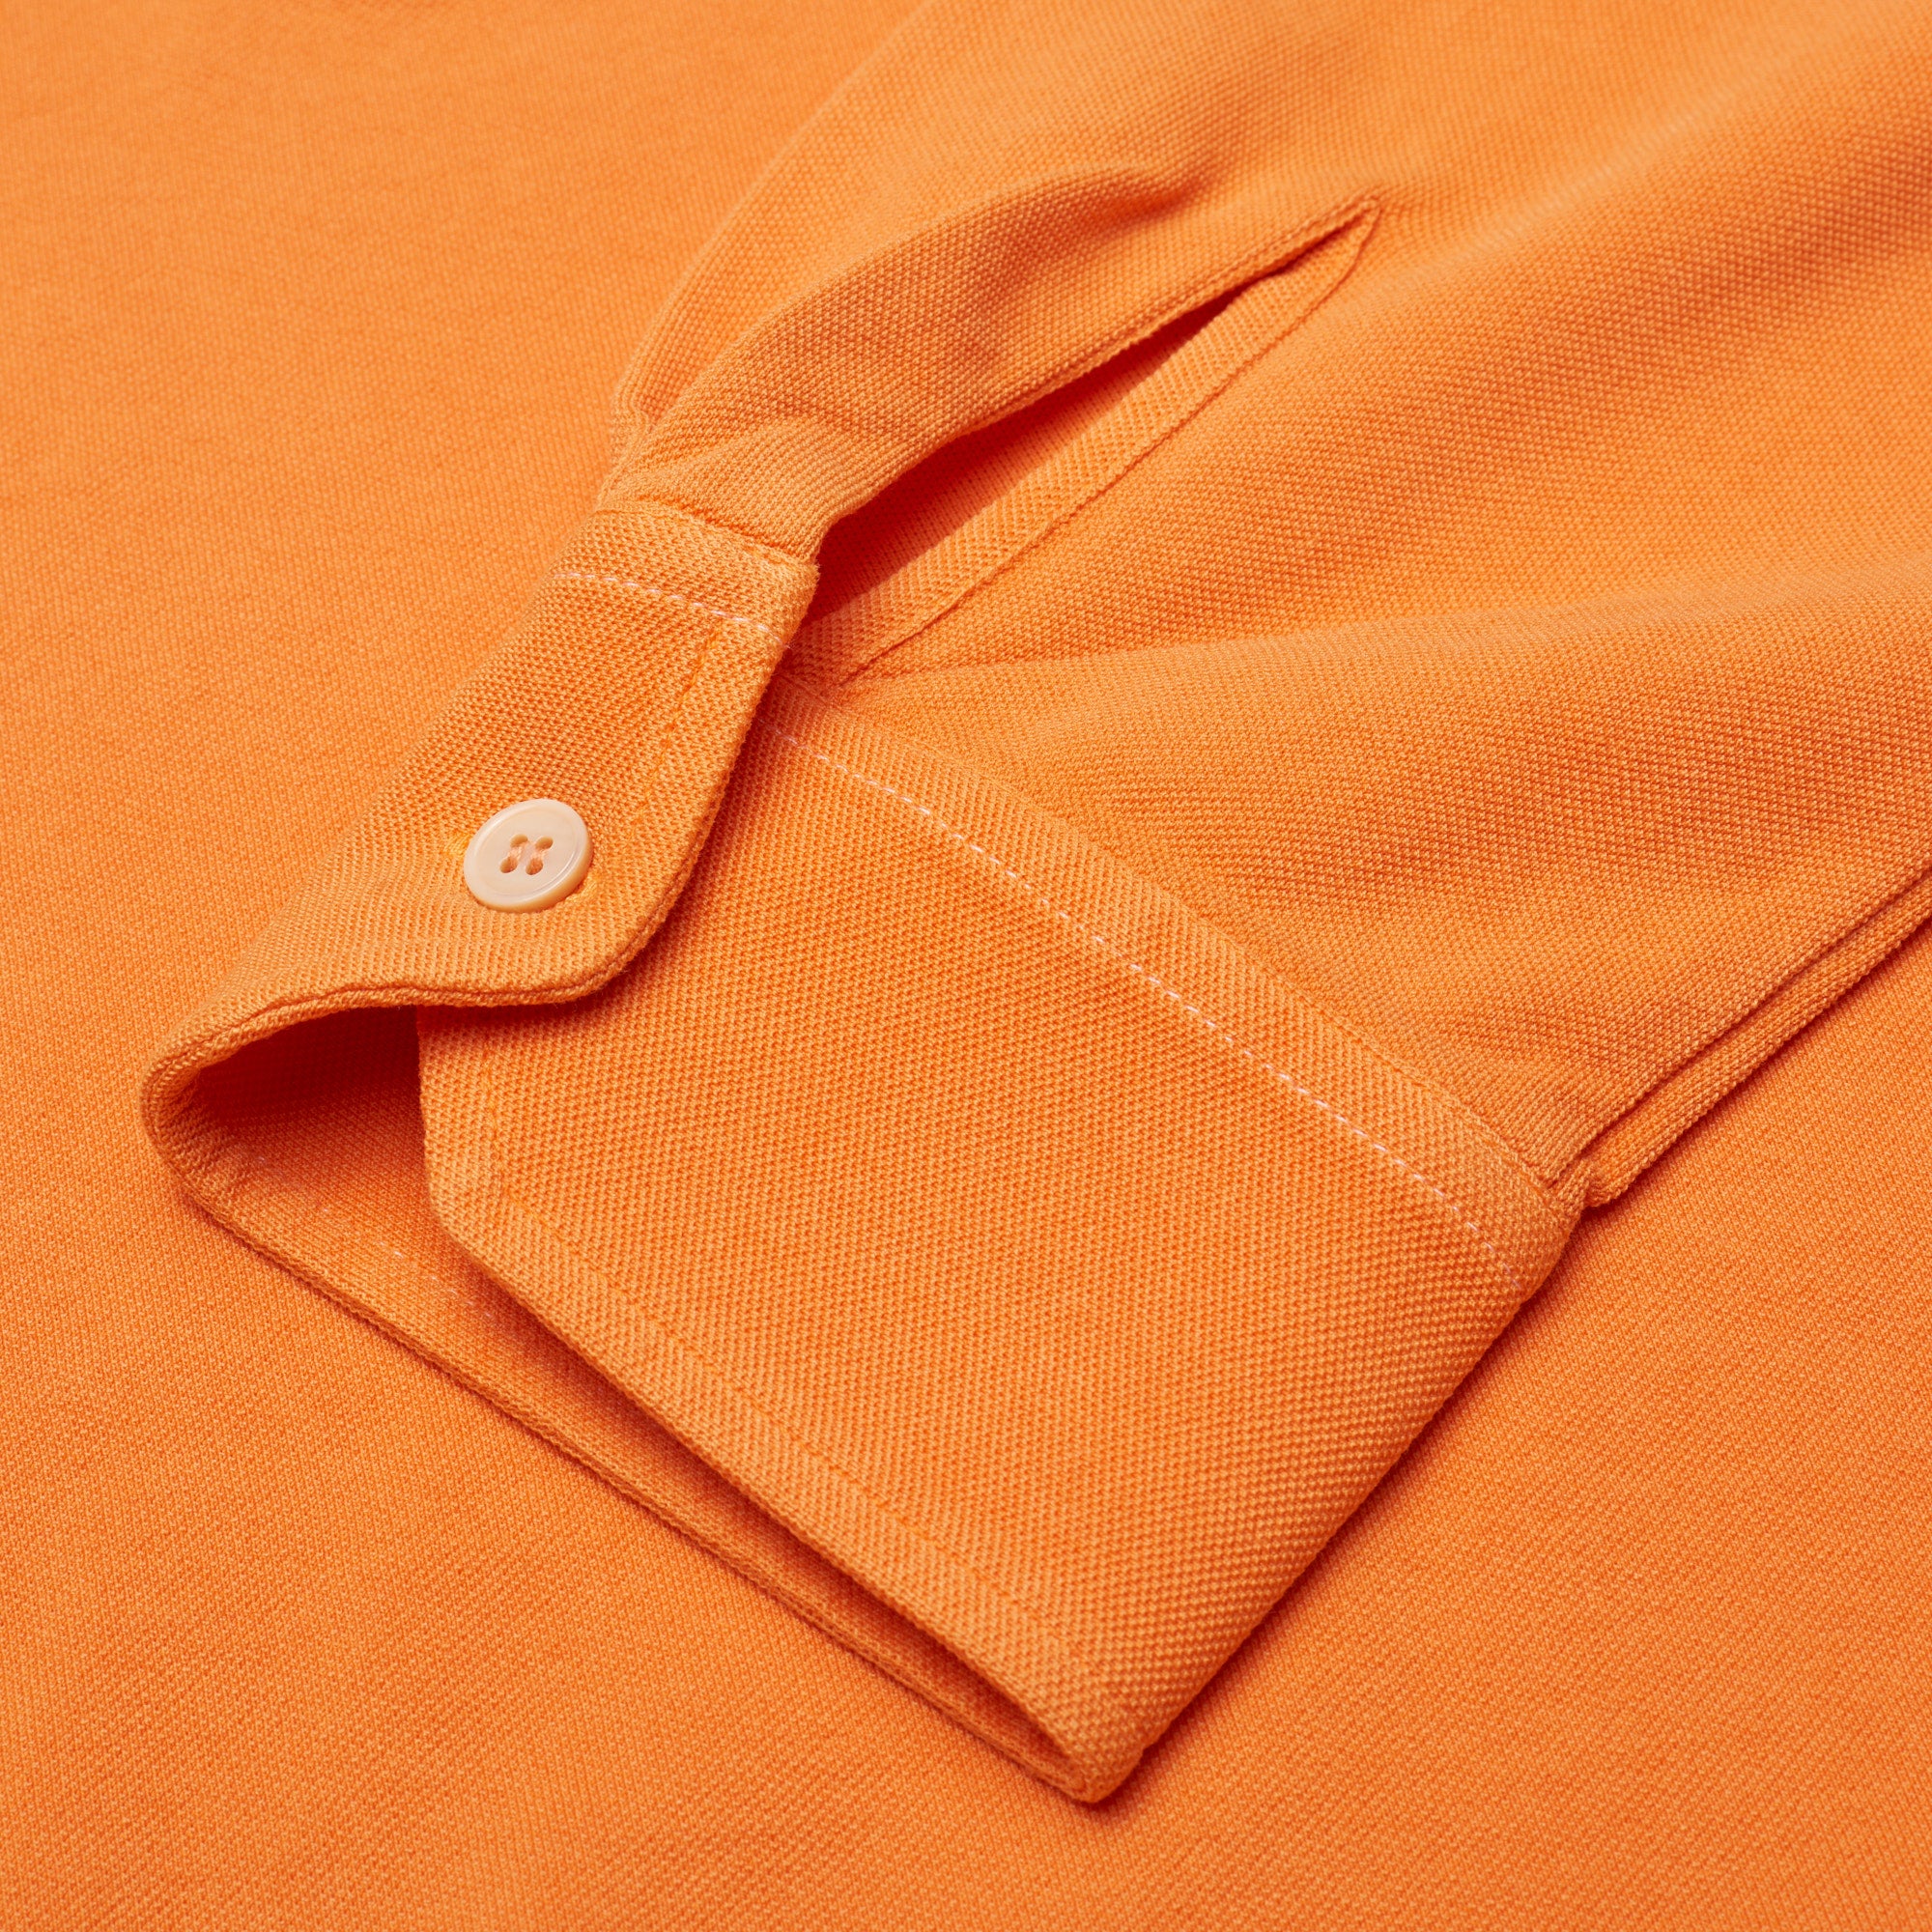 FEDELI "Ring" Orange Cotton Pique Long Sleeve Polo Shirt EU 50 NEW US M FEDELI